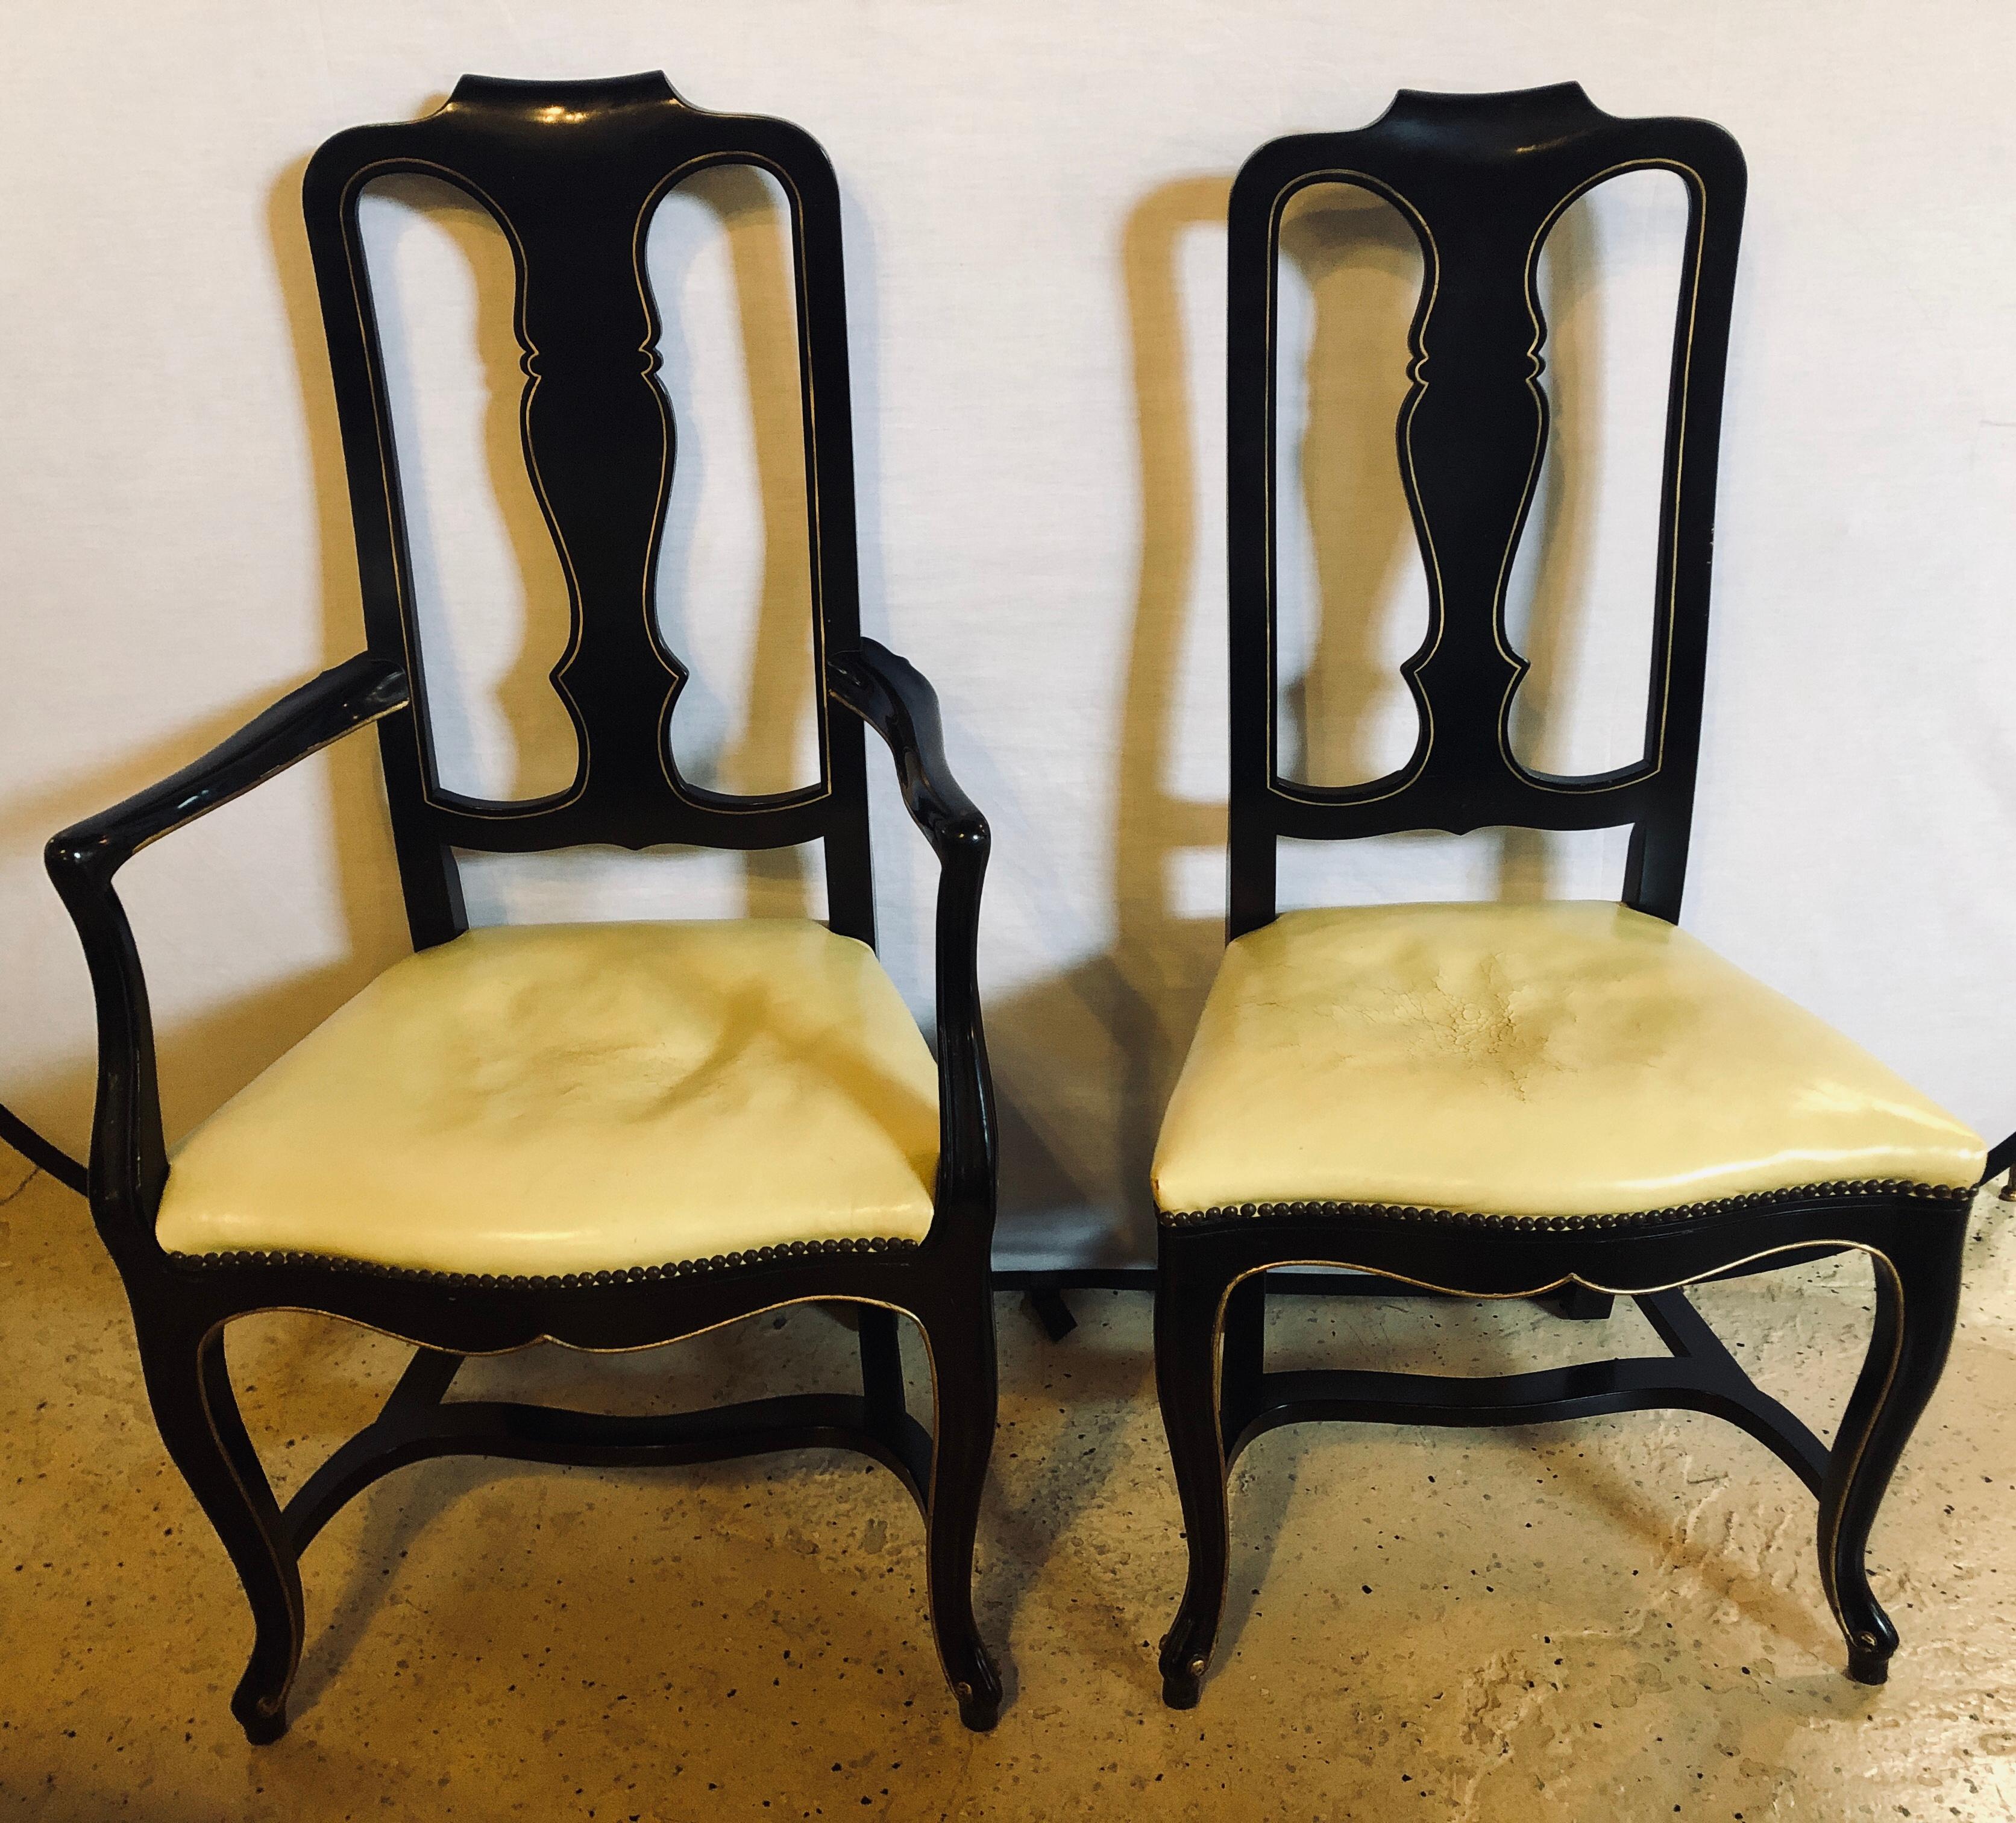 Ensemble de huit chaises de salle à manger de style Queen Anne ébonisées et décorées de dorures. Ces chaises de salle à manger élégantes et stylées sortent tout droit d'un immeuble de New York. Les cadres en ébène s'intègrent facilement dans tout